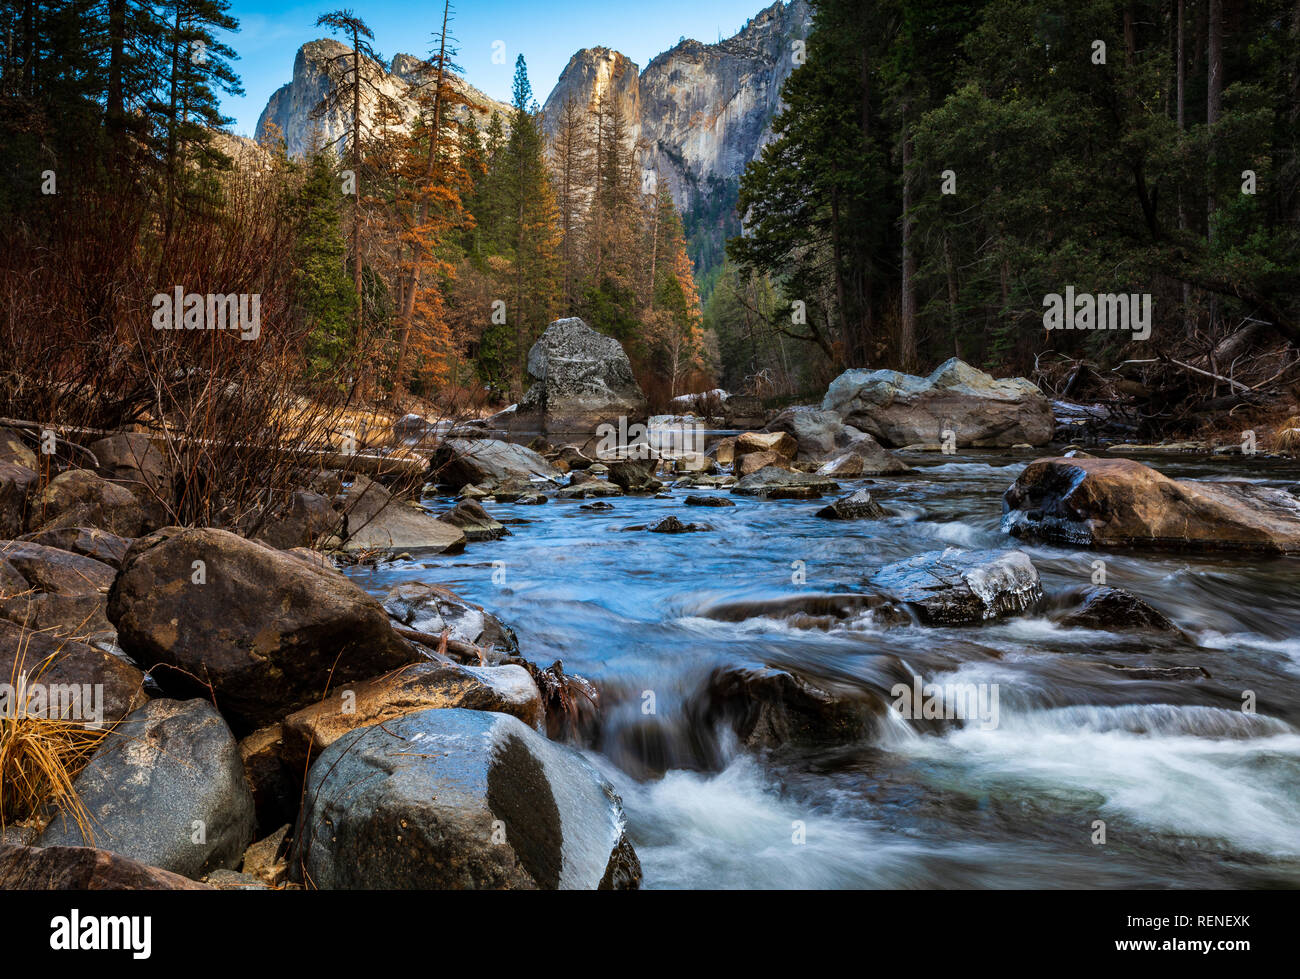 Der Merced River und Half Dome Mountain im Yosemite Nationalpark, Kalifornien während der Teil-US-Regierung abschalten, wo groß Dienstleistungen und f Stockfoto